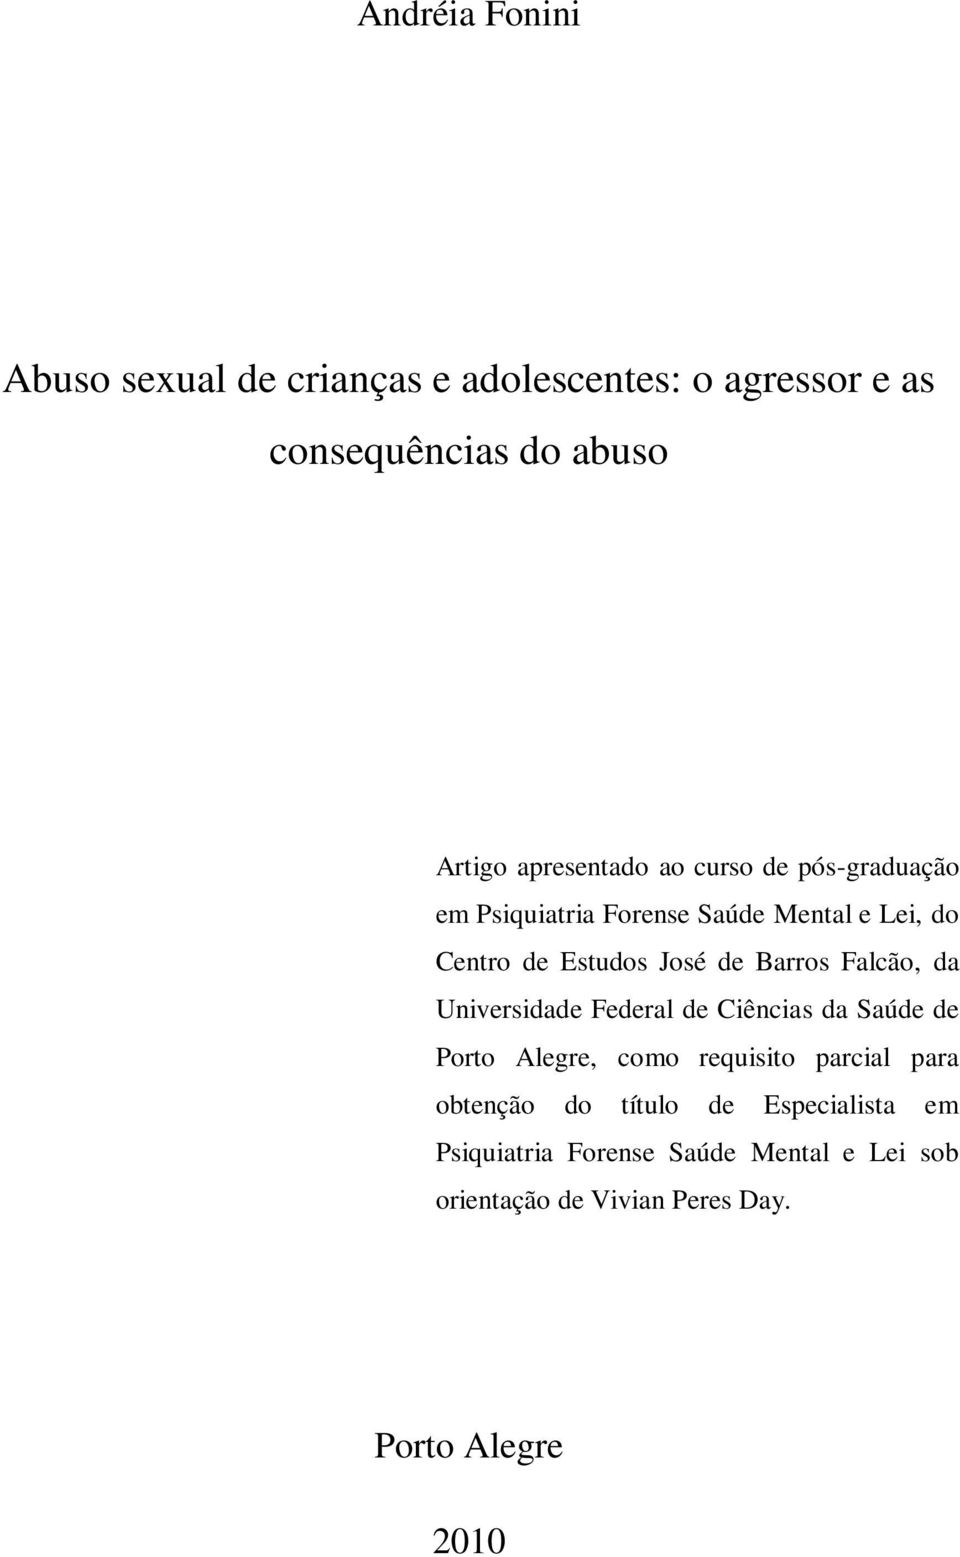 Barros Falcão, da Universidade Federal de Ciências da Saúde de Porto Alegre, como requisito parcial para